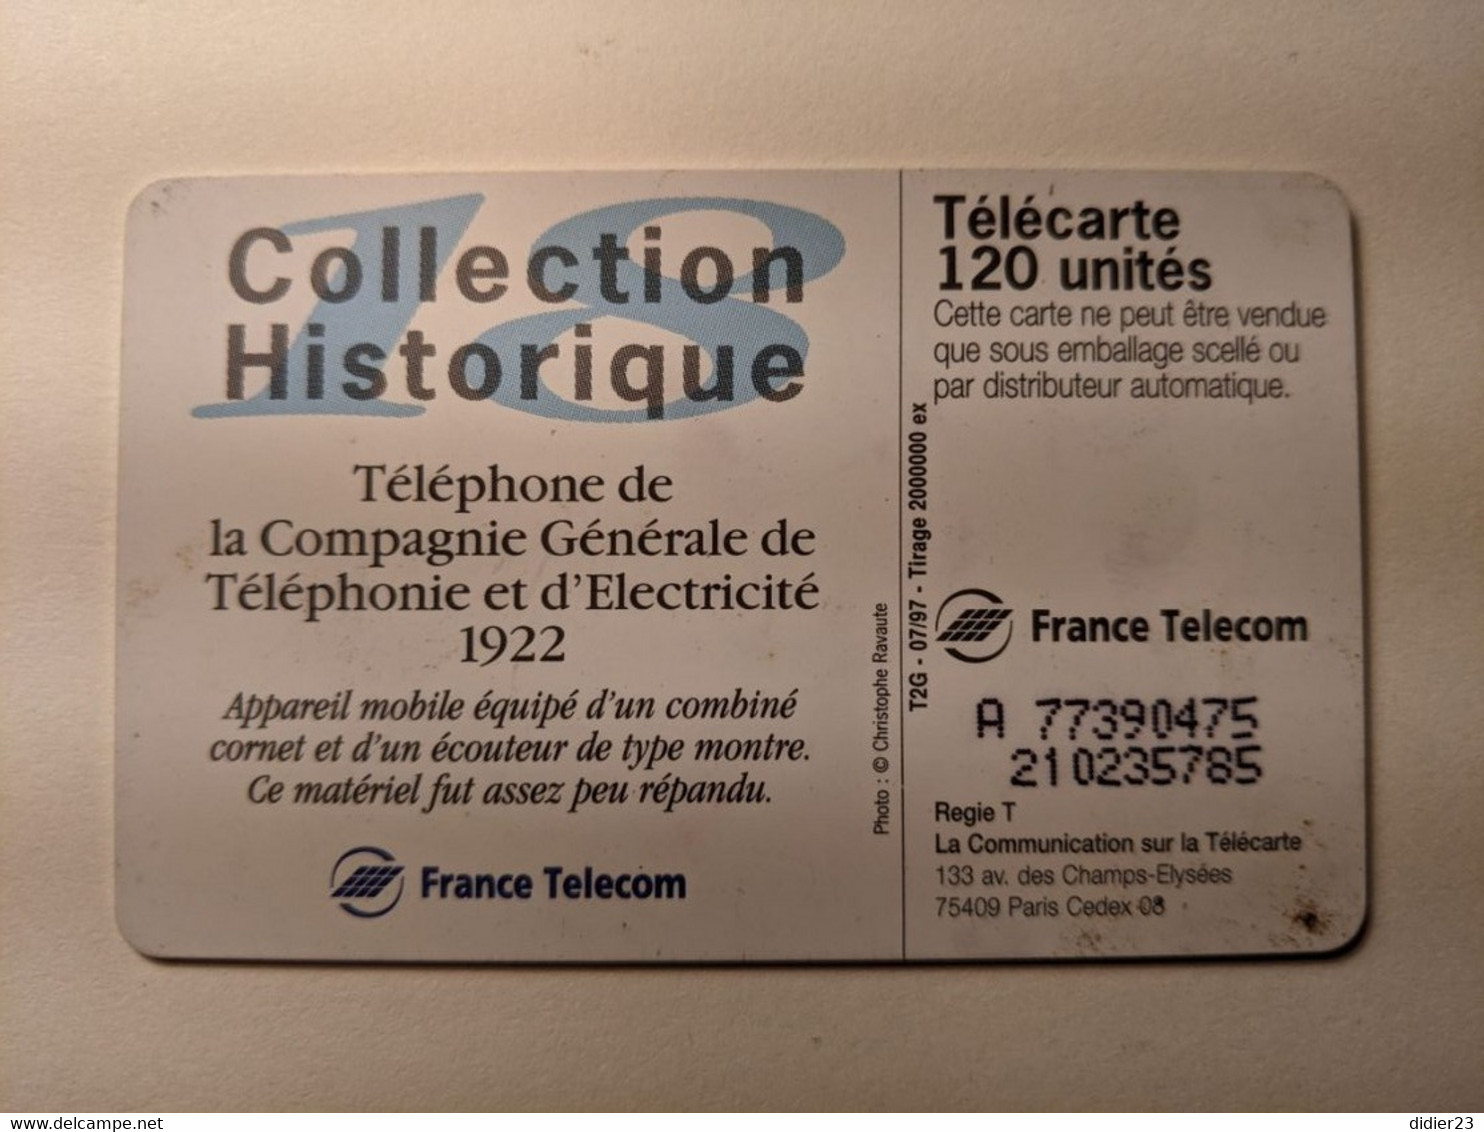 TELECARTE FRANCE TELECOM  50 COLLECTION HISTORIQUE TELEPHONE DE LA COMPAGNIE GENERALE TELEPHONIE 1922 - Telefone